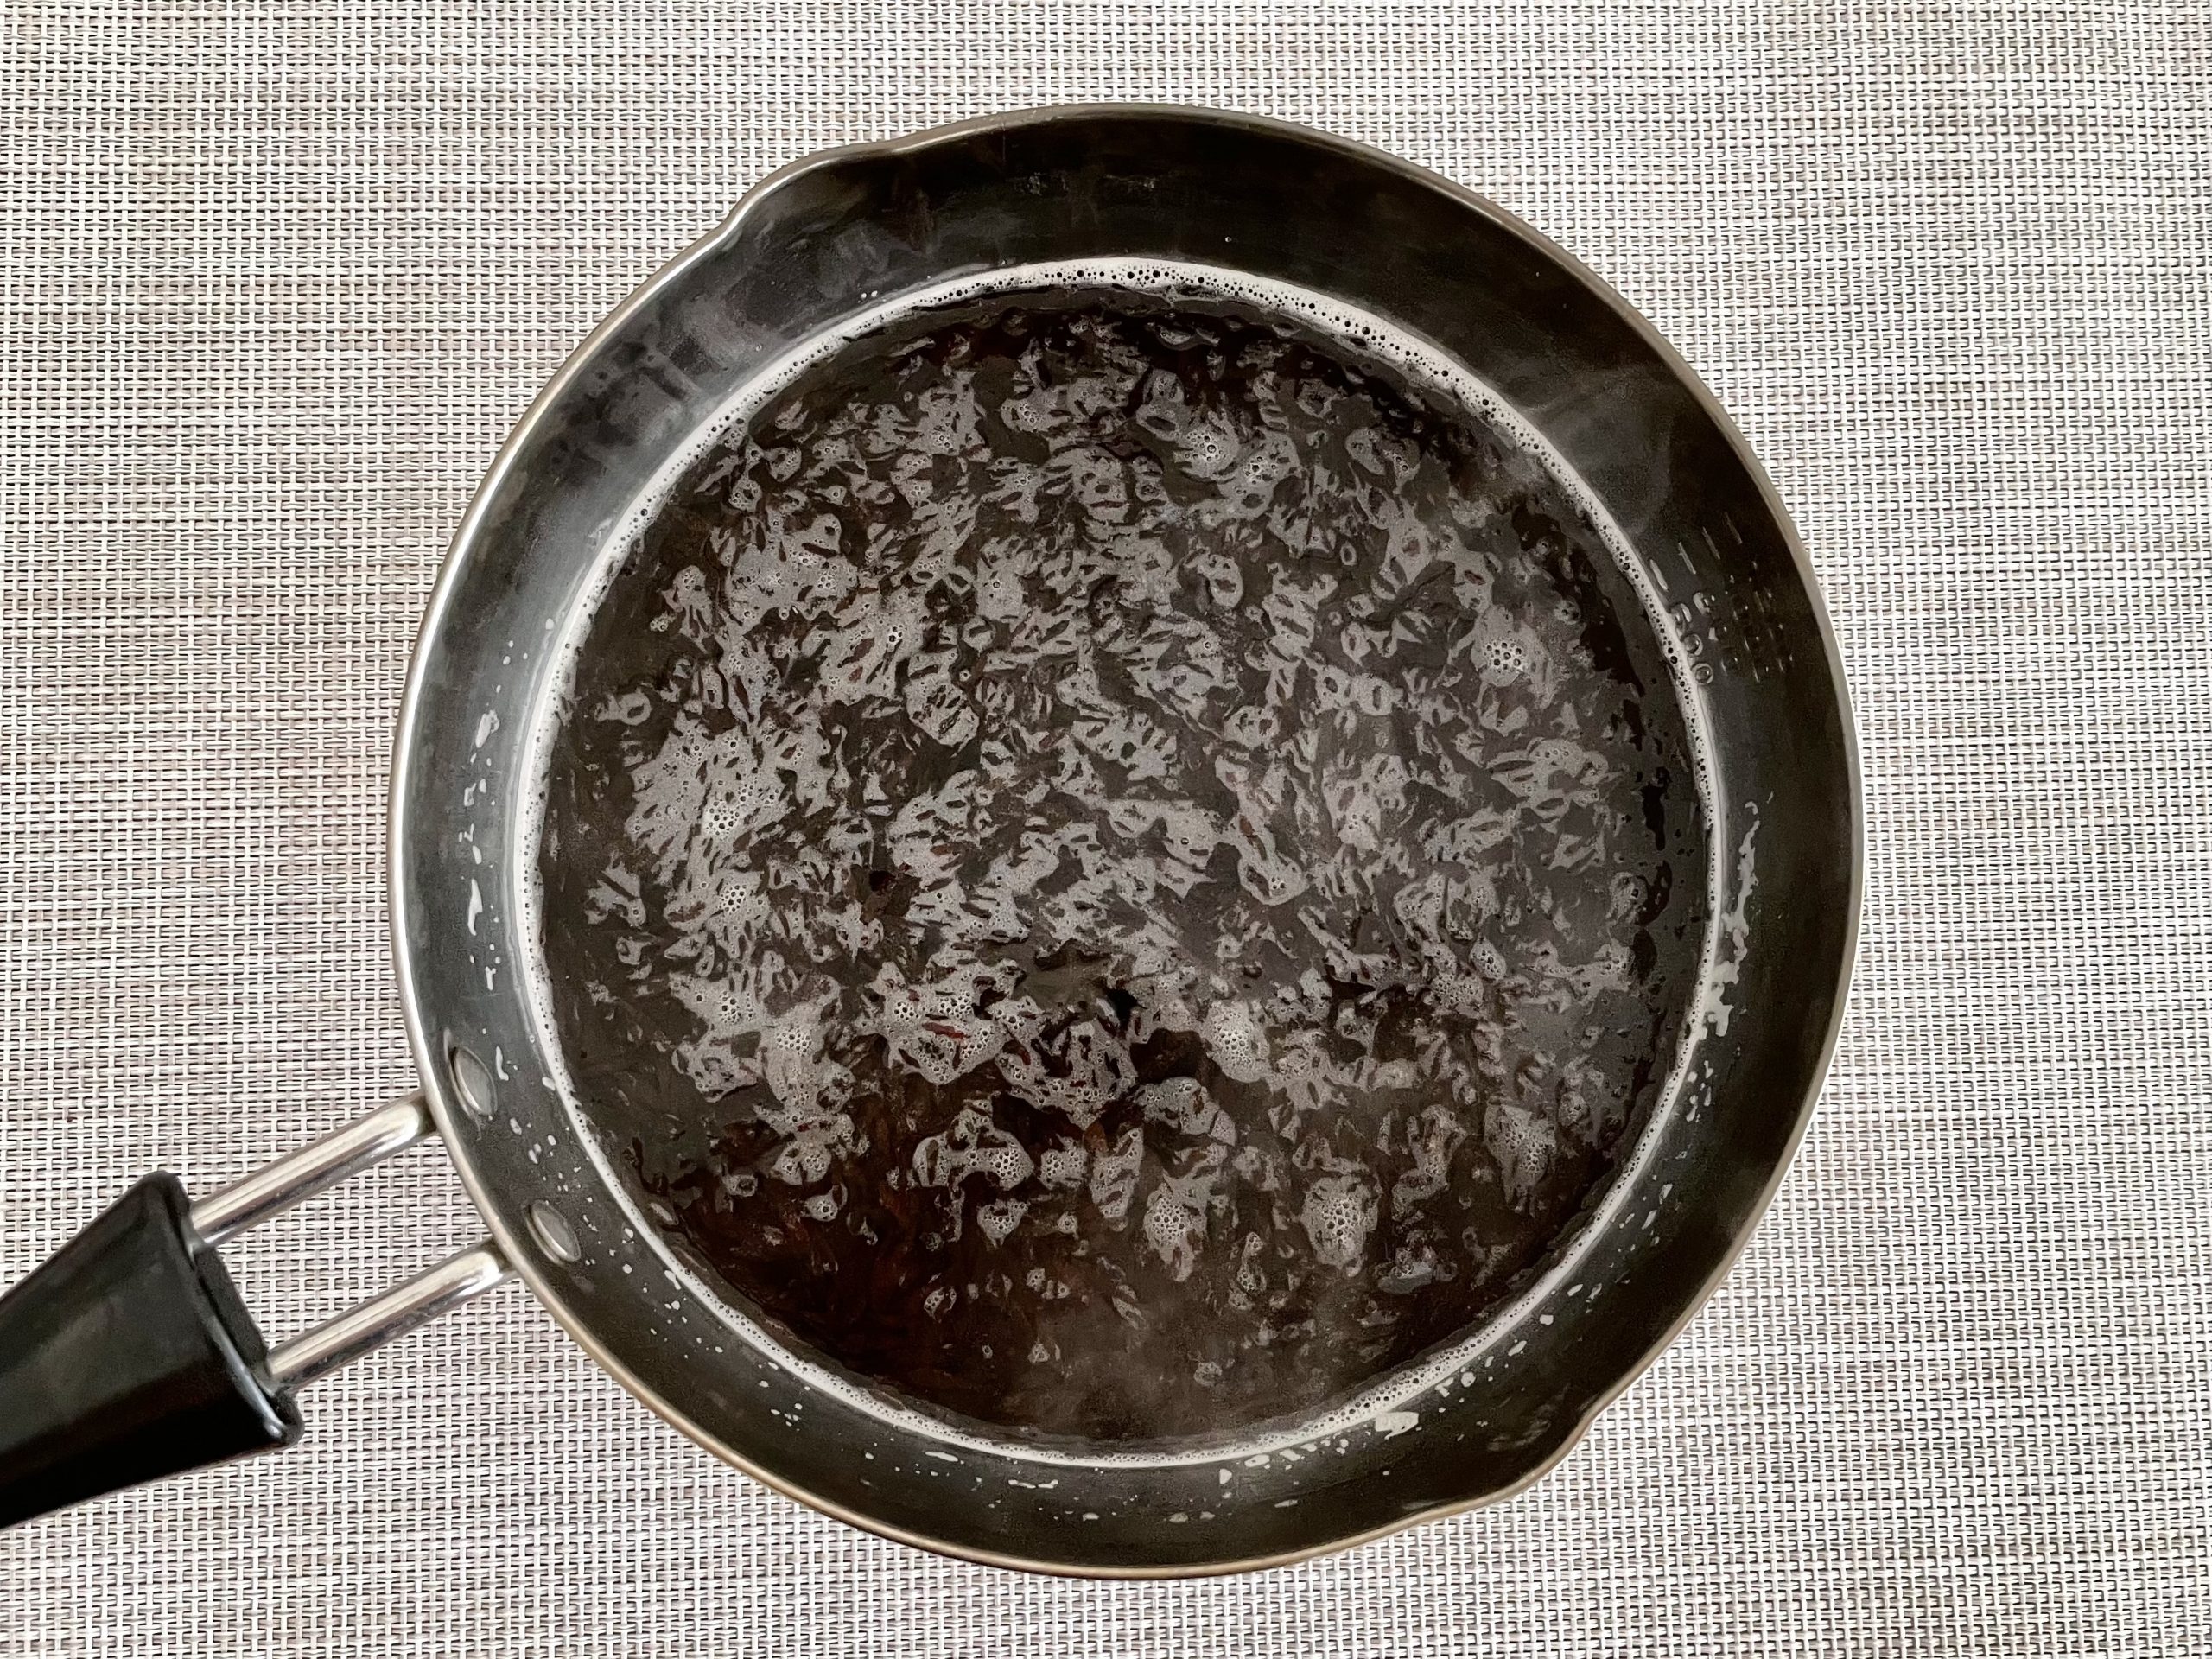 【下準備】<br />
鍋に水と芽ひじきを入れ加熱し、沸騰したら火を止め3分放置。